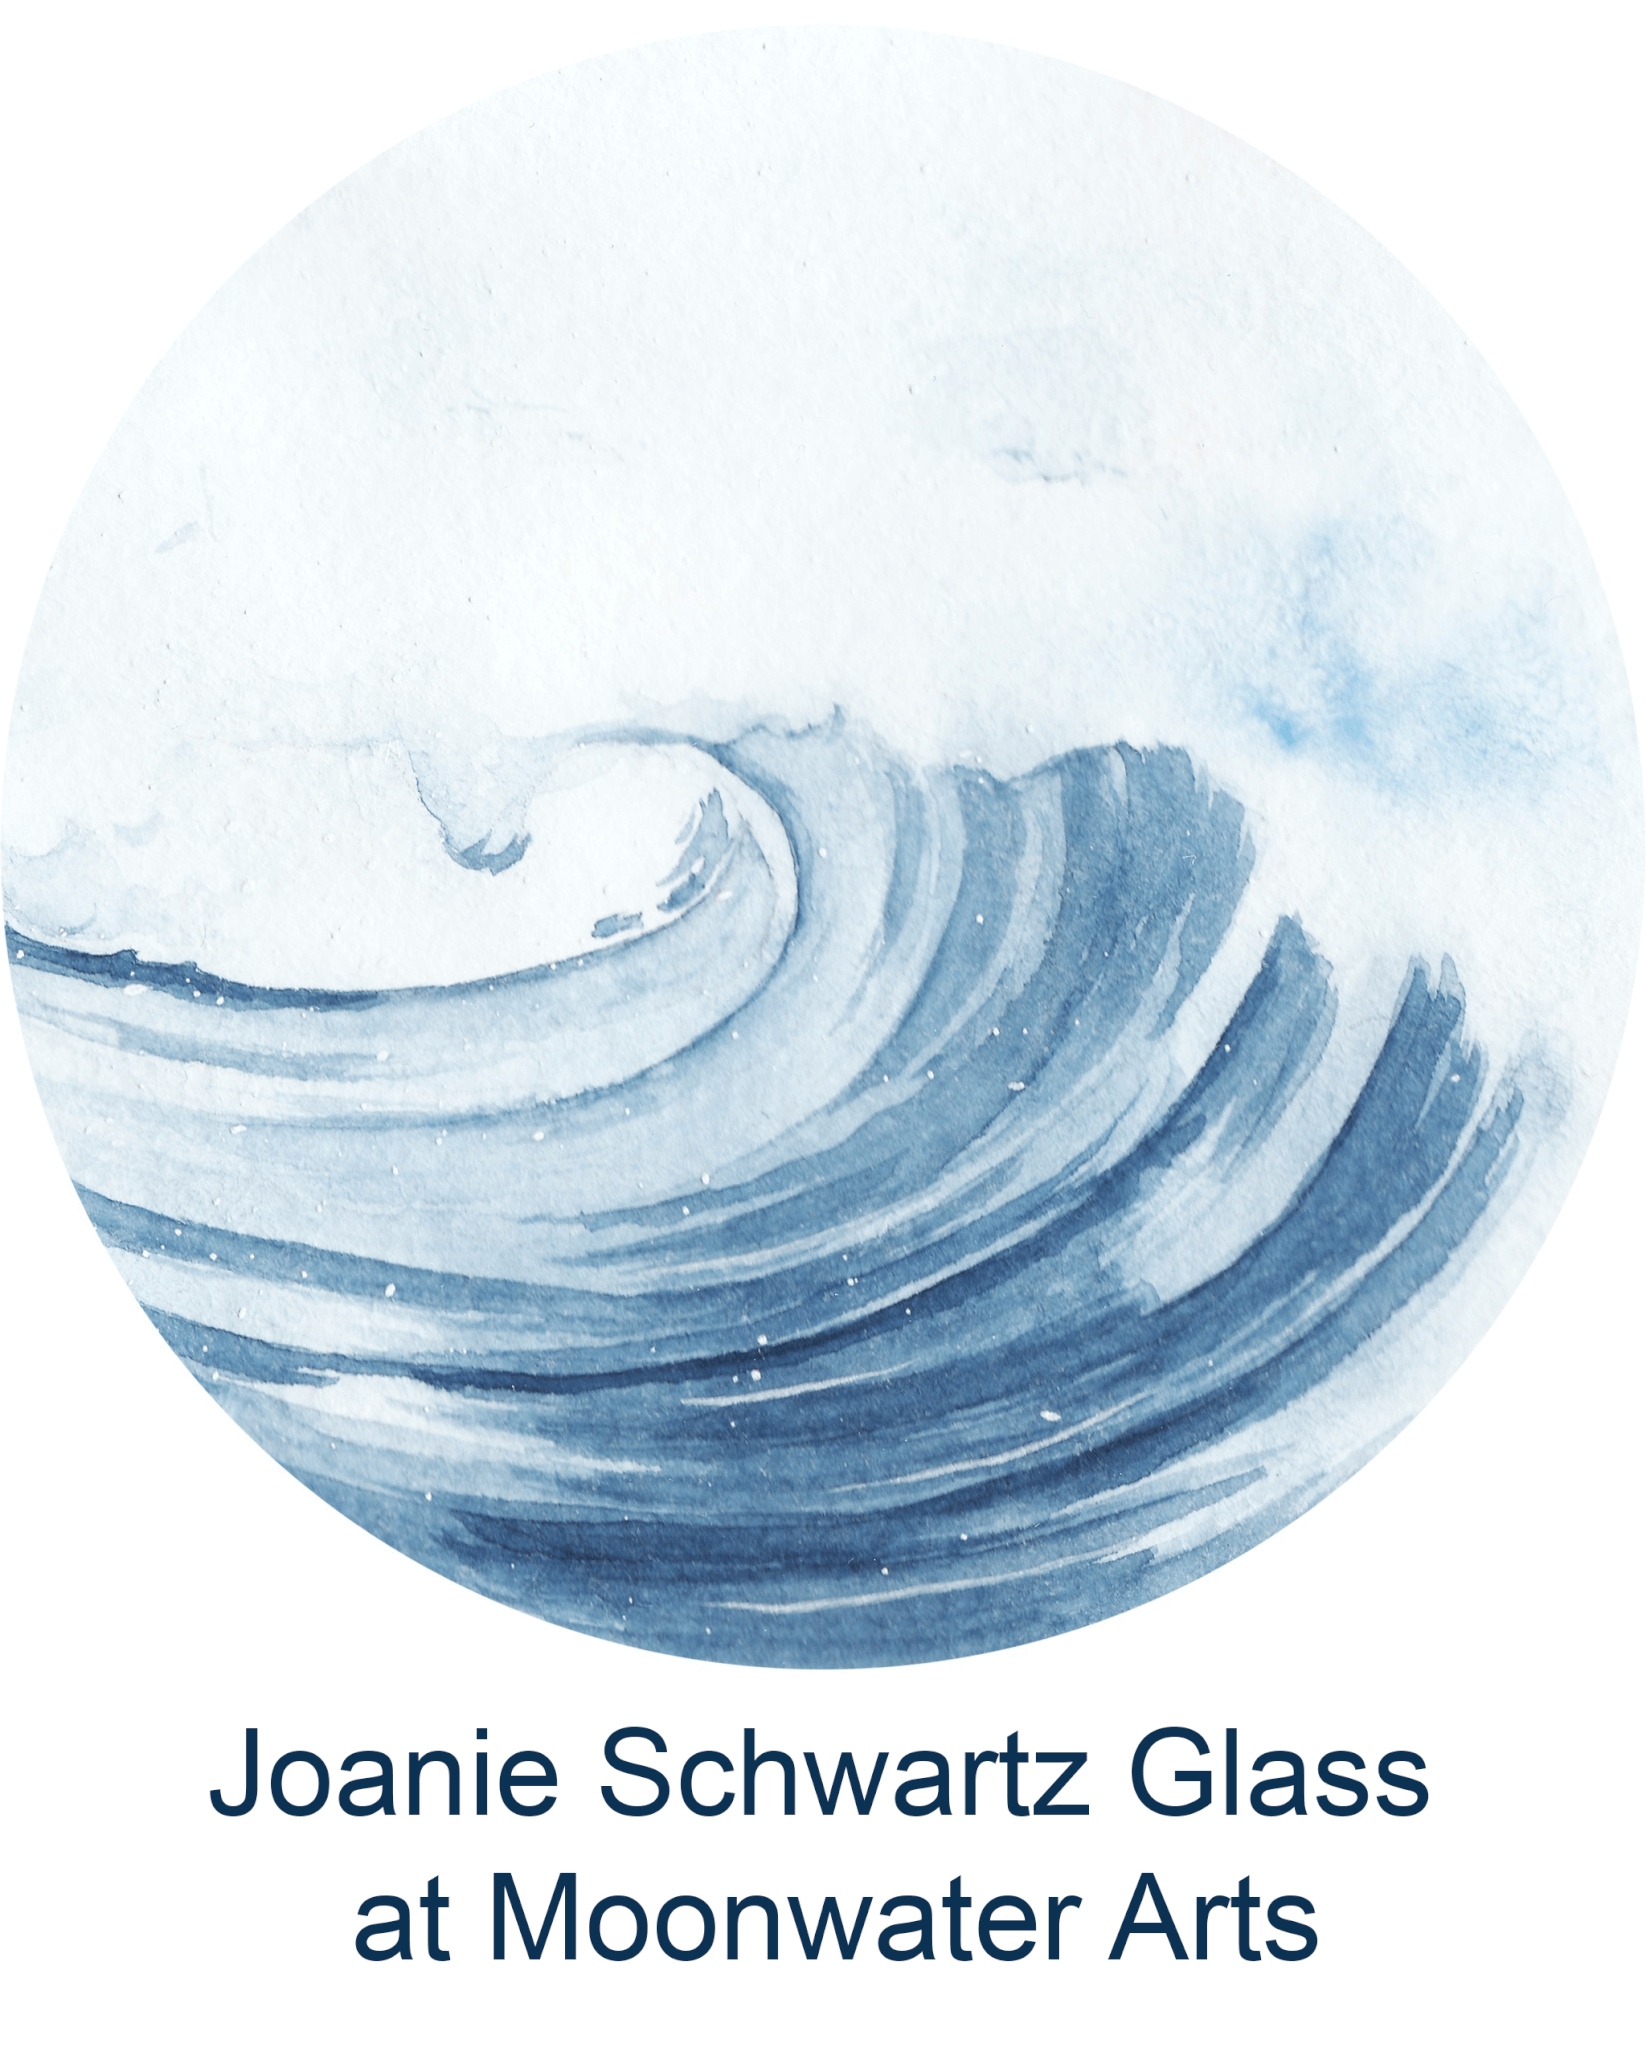 Joanie Schwartz Glass at Moonwater Arts